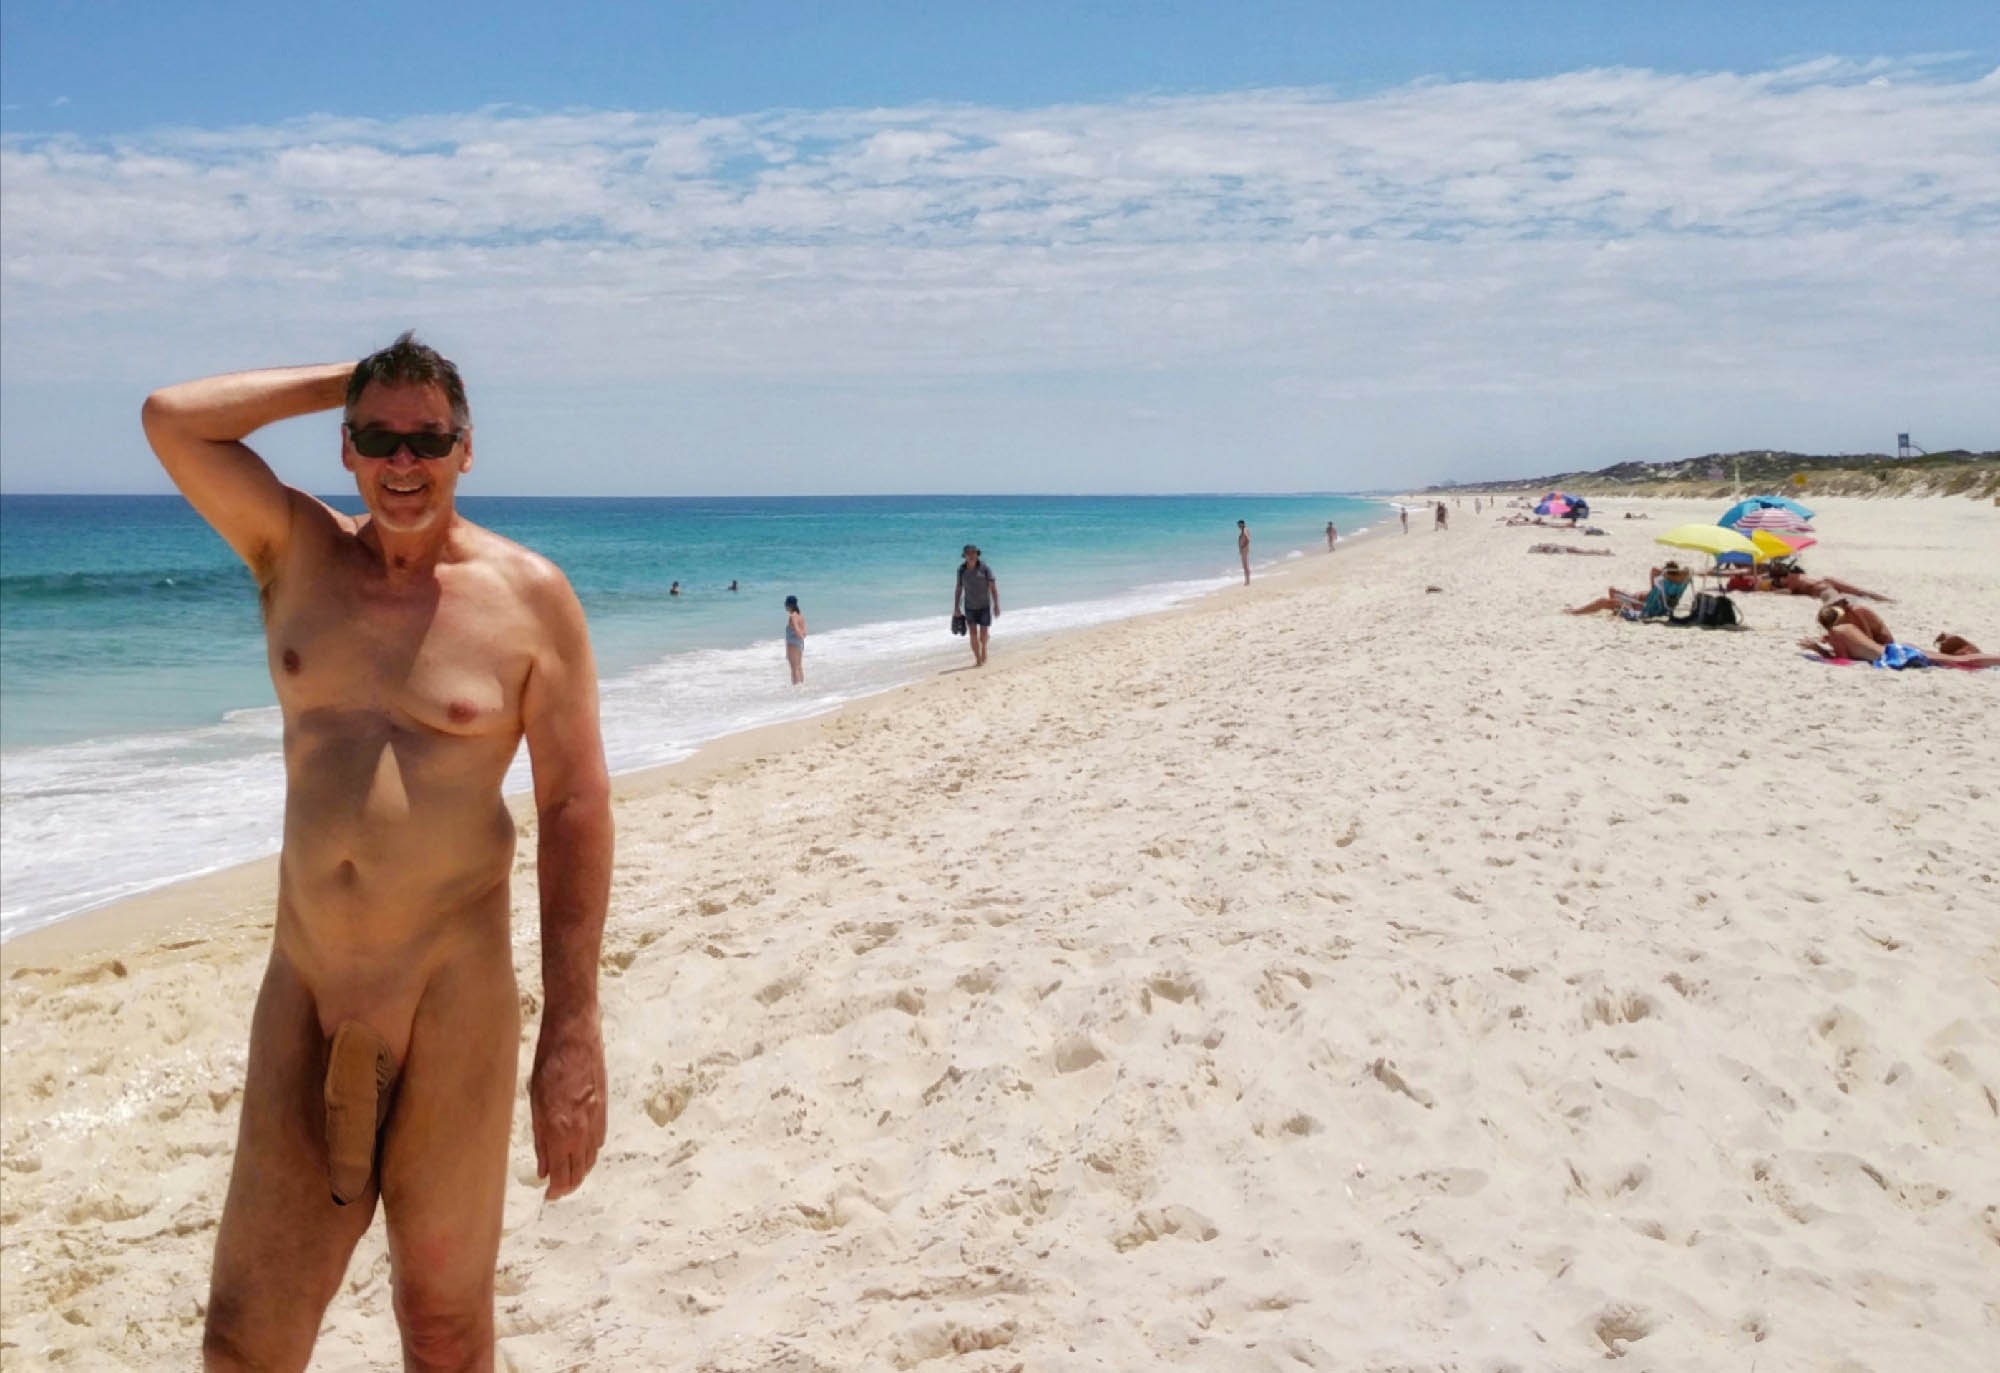 Verdadero nudista exhibiéndose en la playa Verdadero nudista exhibiéndose en la playaTru